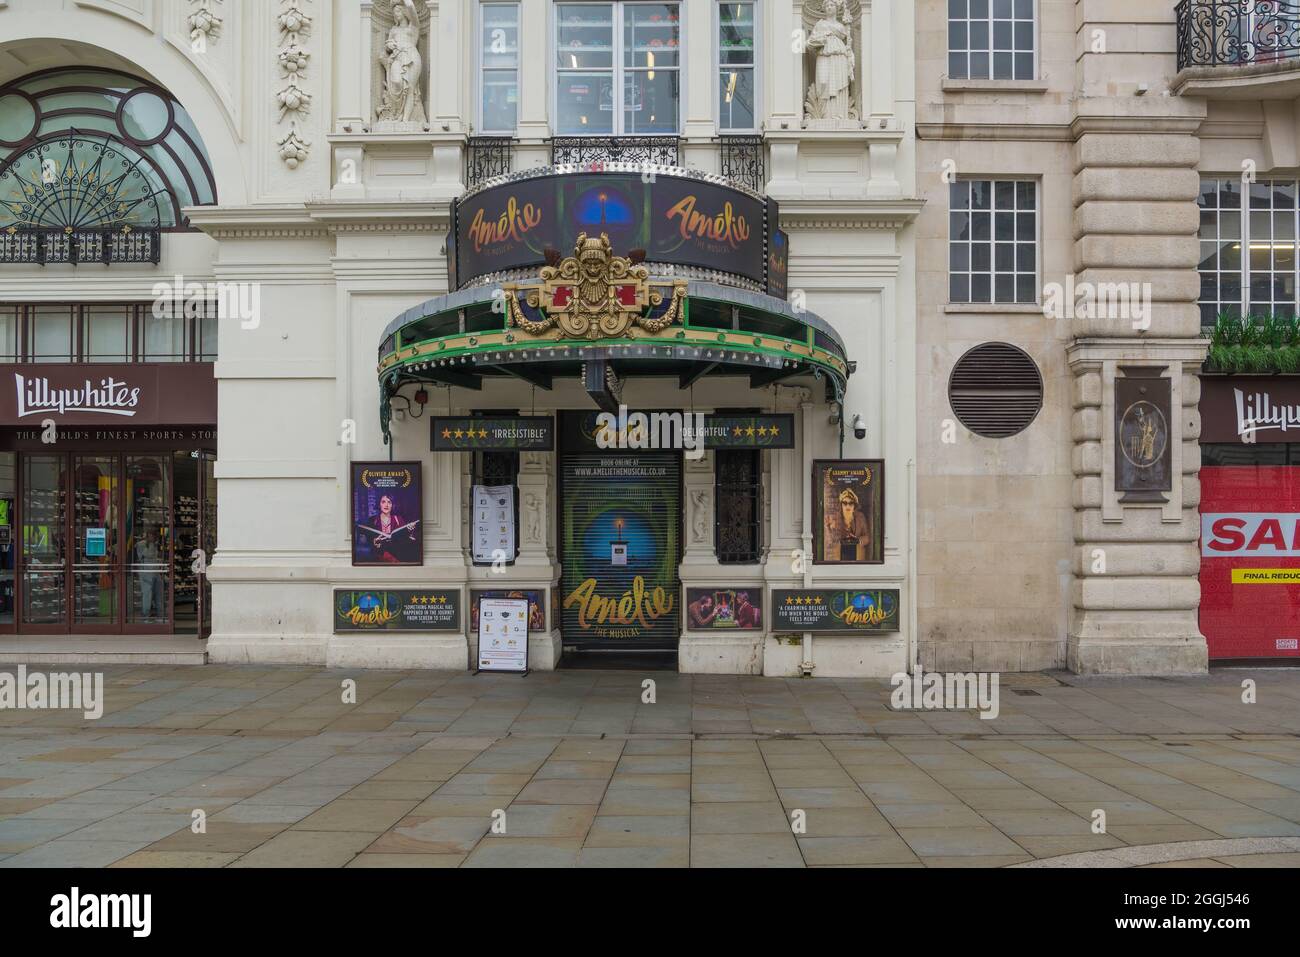 Facciata frontale del Criterion Theatre su Piccadilly Circus, con pubblicità per la produzione musicale di Amelie. Londra, Inghilterra, Regno Unito Foto Stock